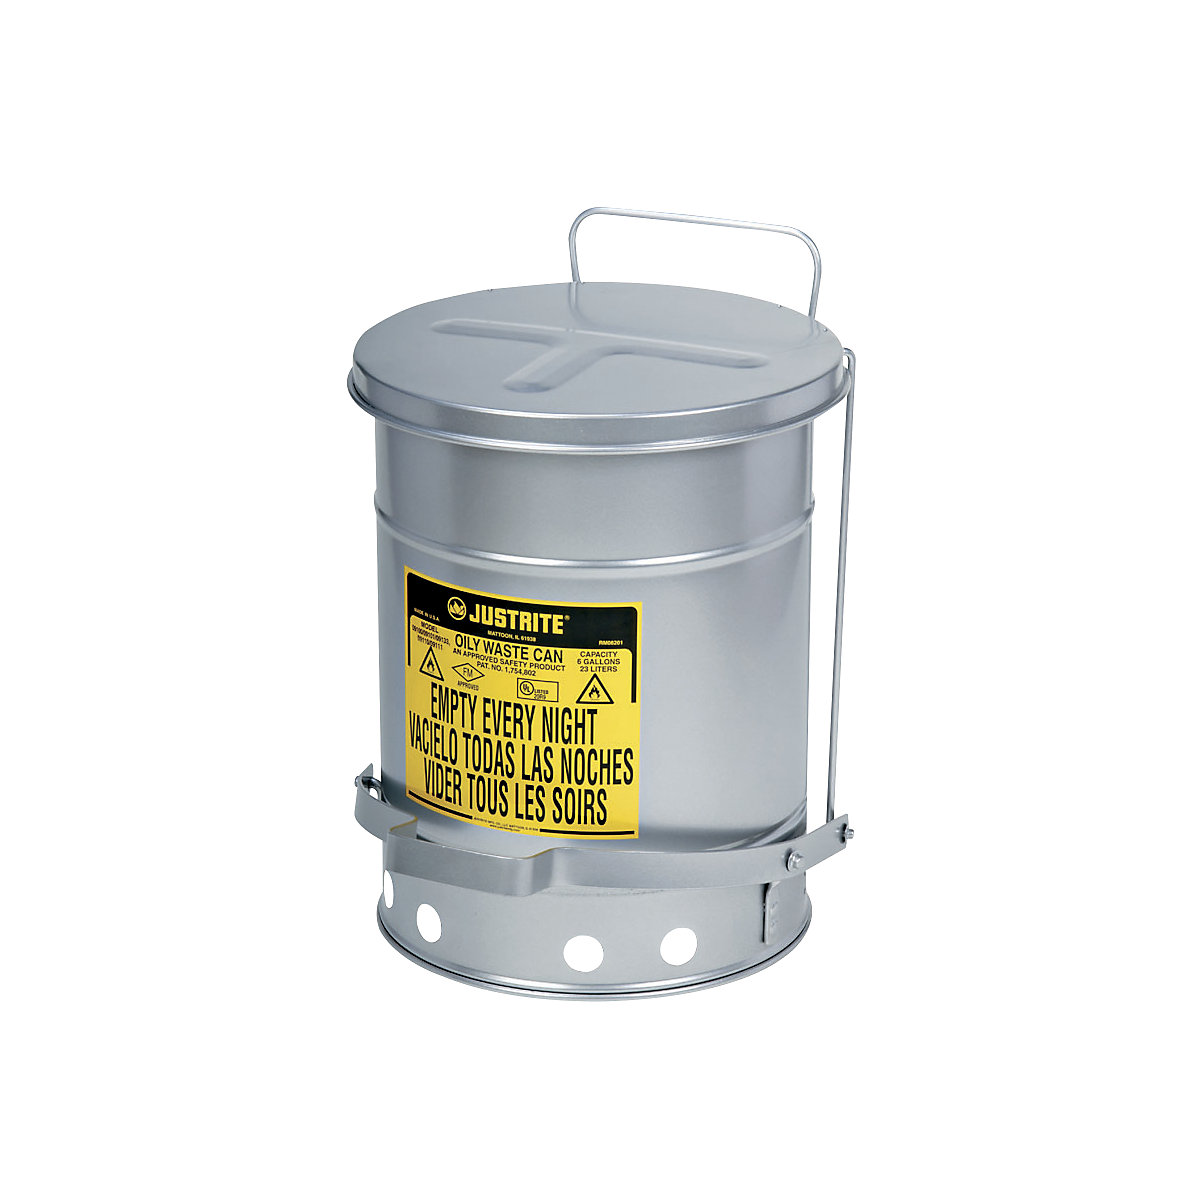 Recipiente de seguridad insonorizado para la eliminación de residuos SoundGard™ – Justrite, cierre de la tapa amortiguado y silencioso, color plata, capacidad 80 l-6